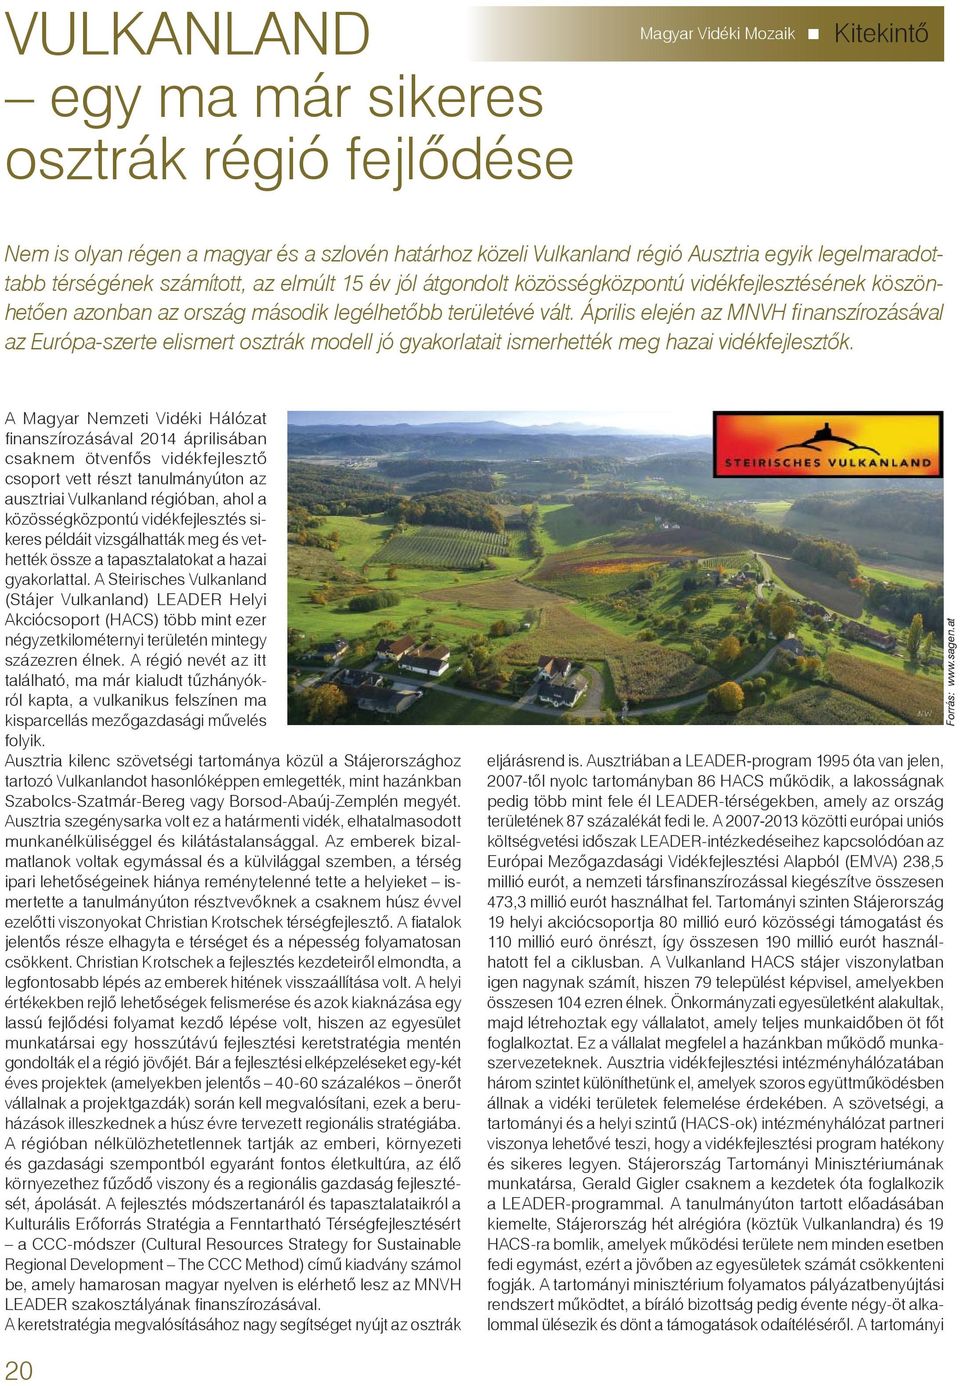 Április elején az MNVH fi nanszírozásával az Európa-szerte elismert osztrák modell jó gyakorlatait ismerhették meg hazai vidékfejlesztők.